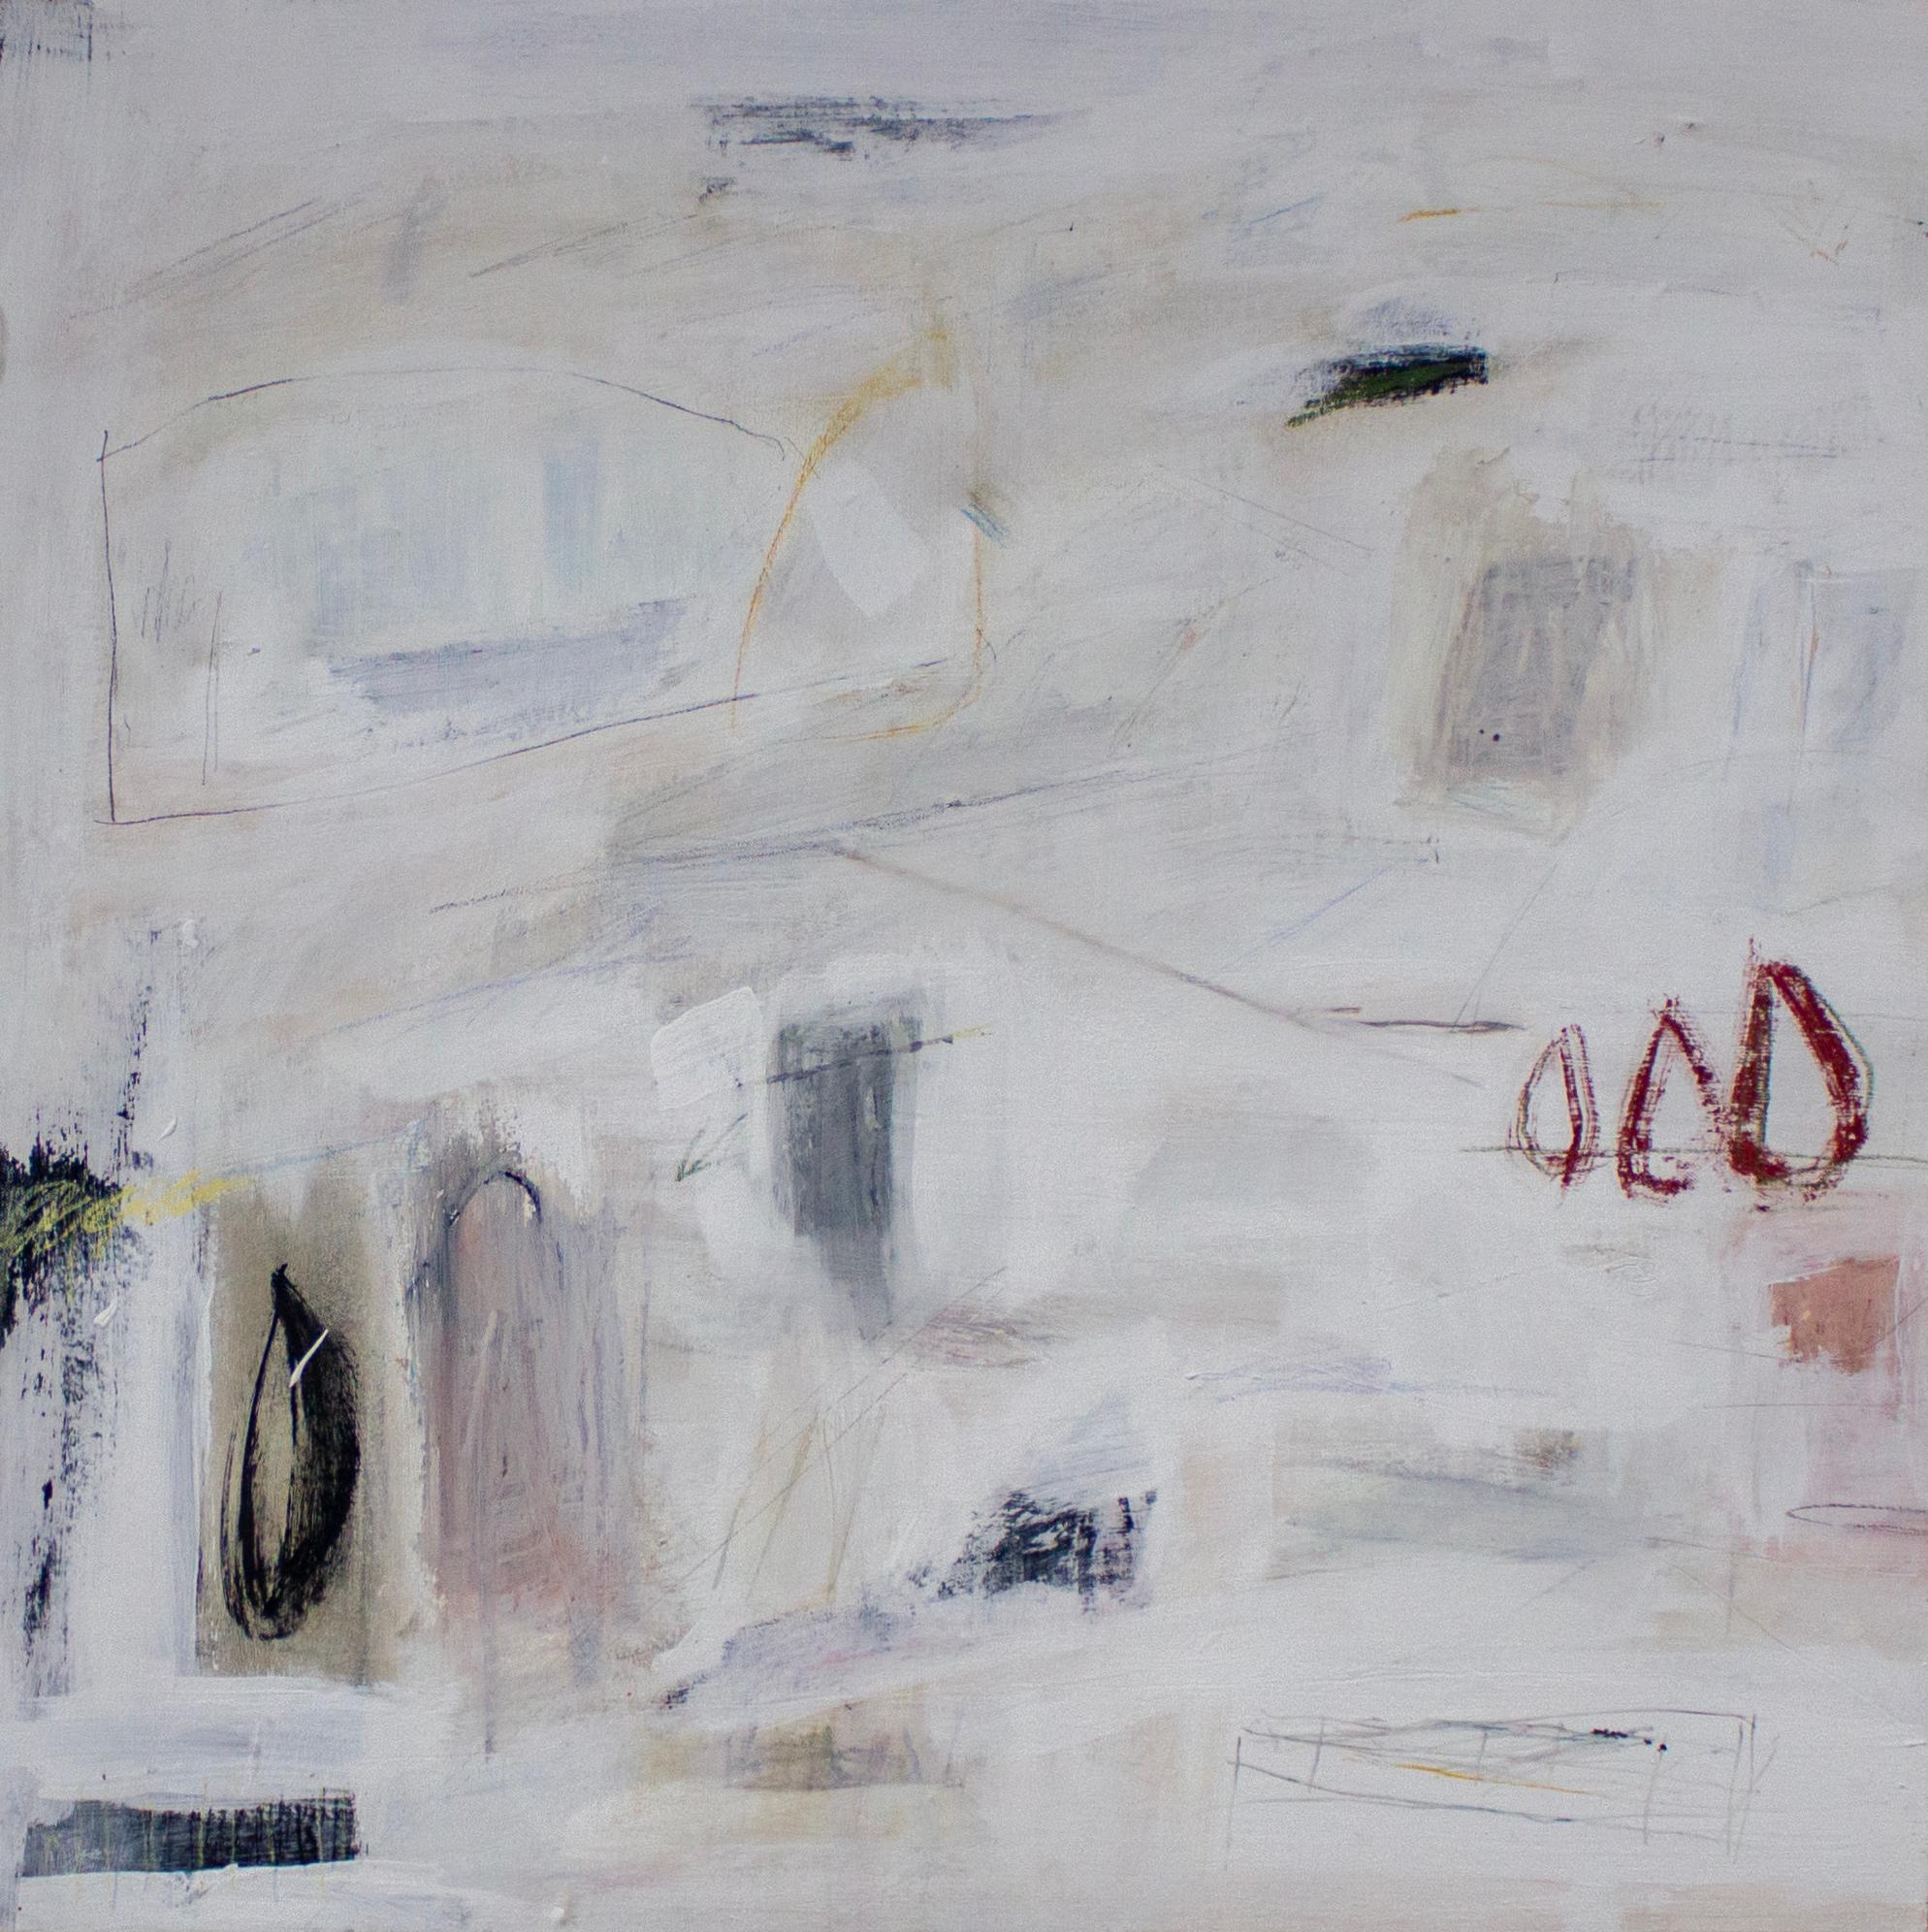 Abstract Painting Brian Jerome - Une approche de la préservation personnelle avec des caractéristiques minimalistes